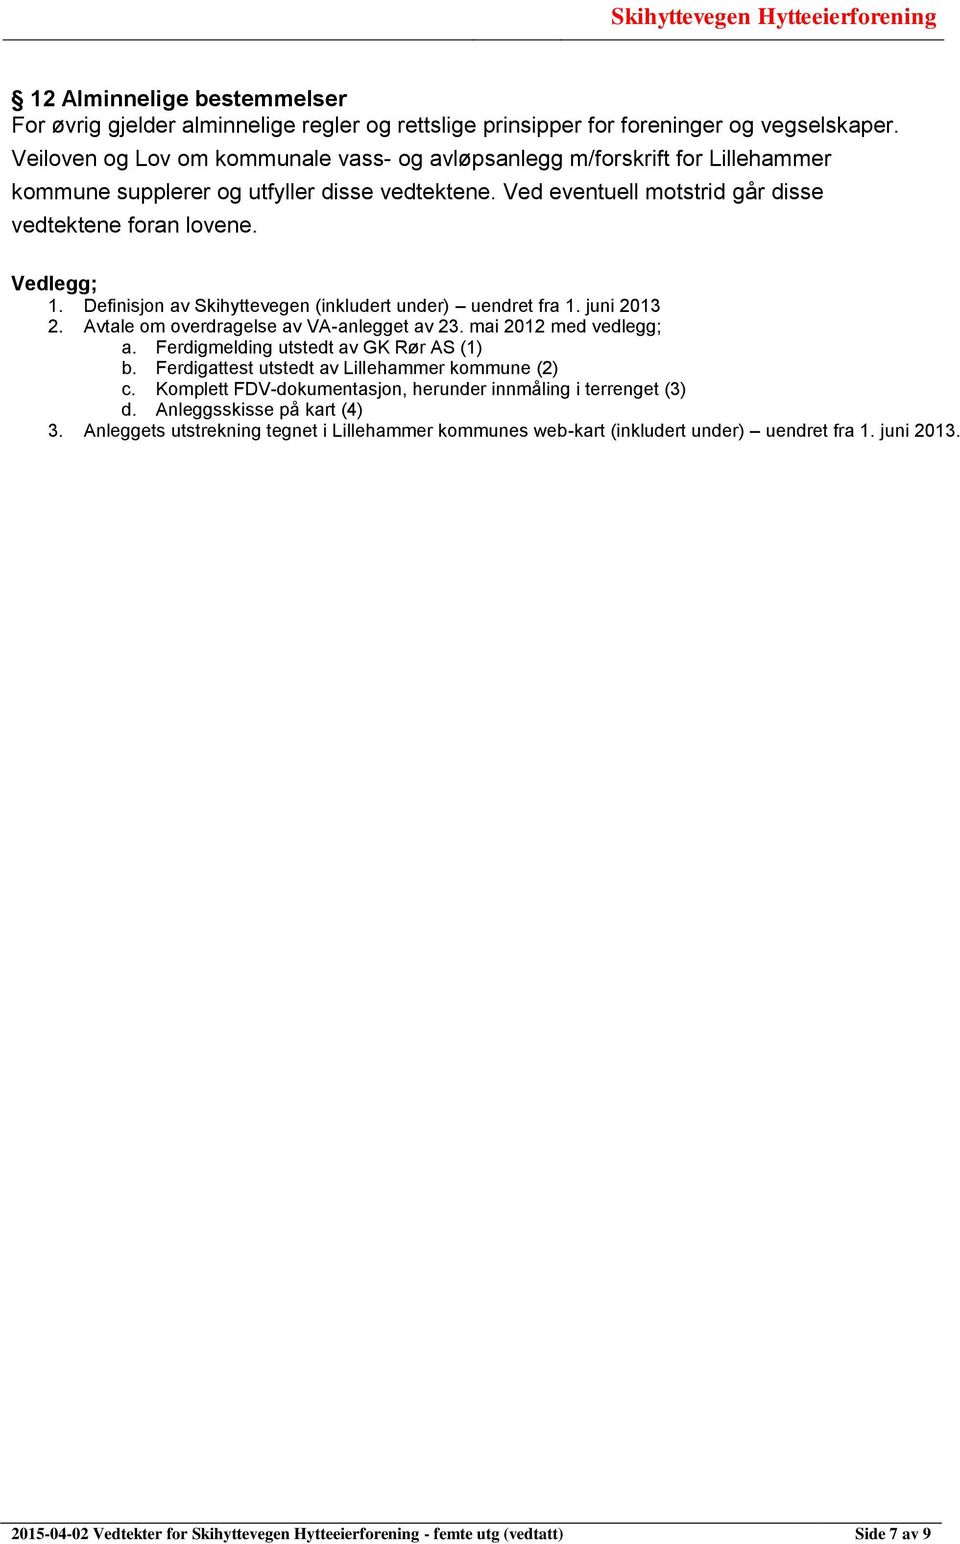 Definisjon av Skihyttevegen (inkludert under) uendret fra 1. juni 2013 2. Avtale om overdragelse av VA-anlegget av 23. mai 2012 med vedlegg; a. Ferdigmelding utstedt av GK Rør AS (1) b.